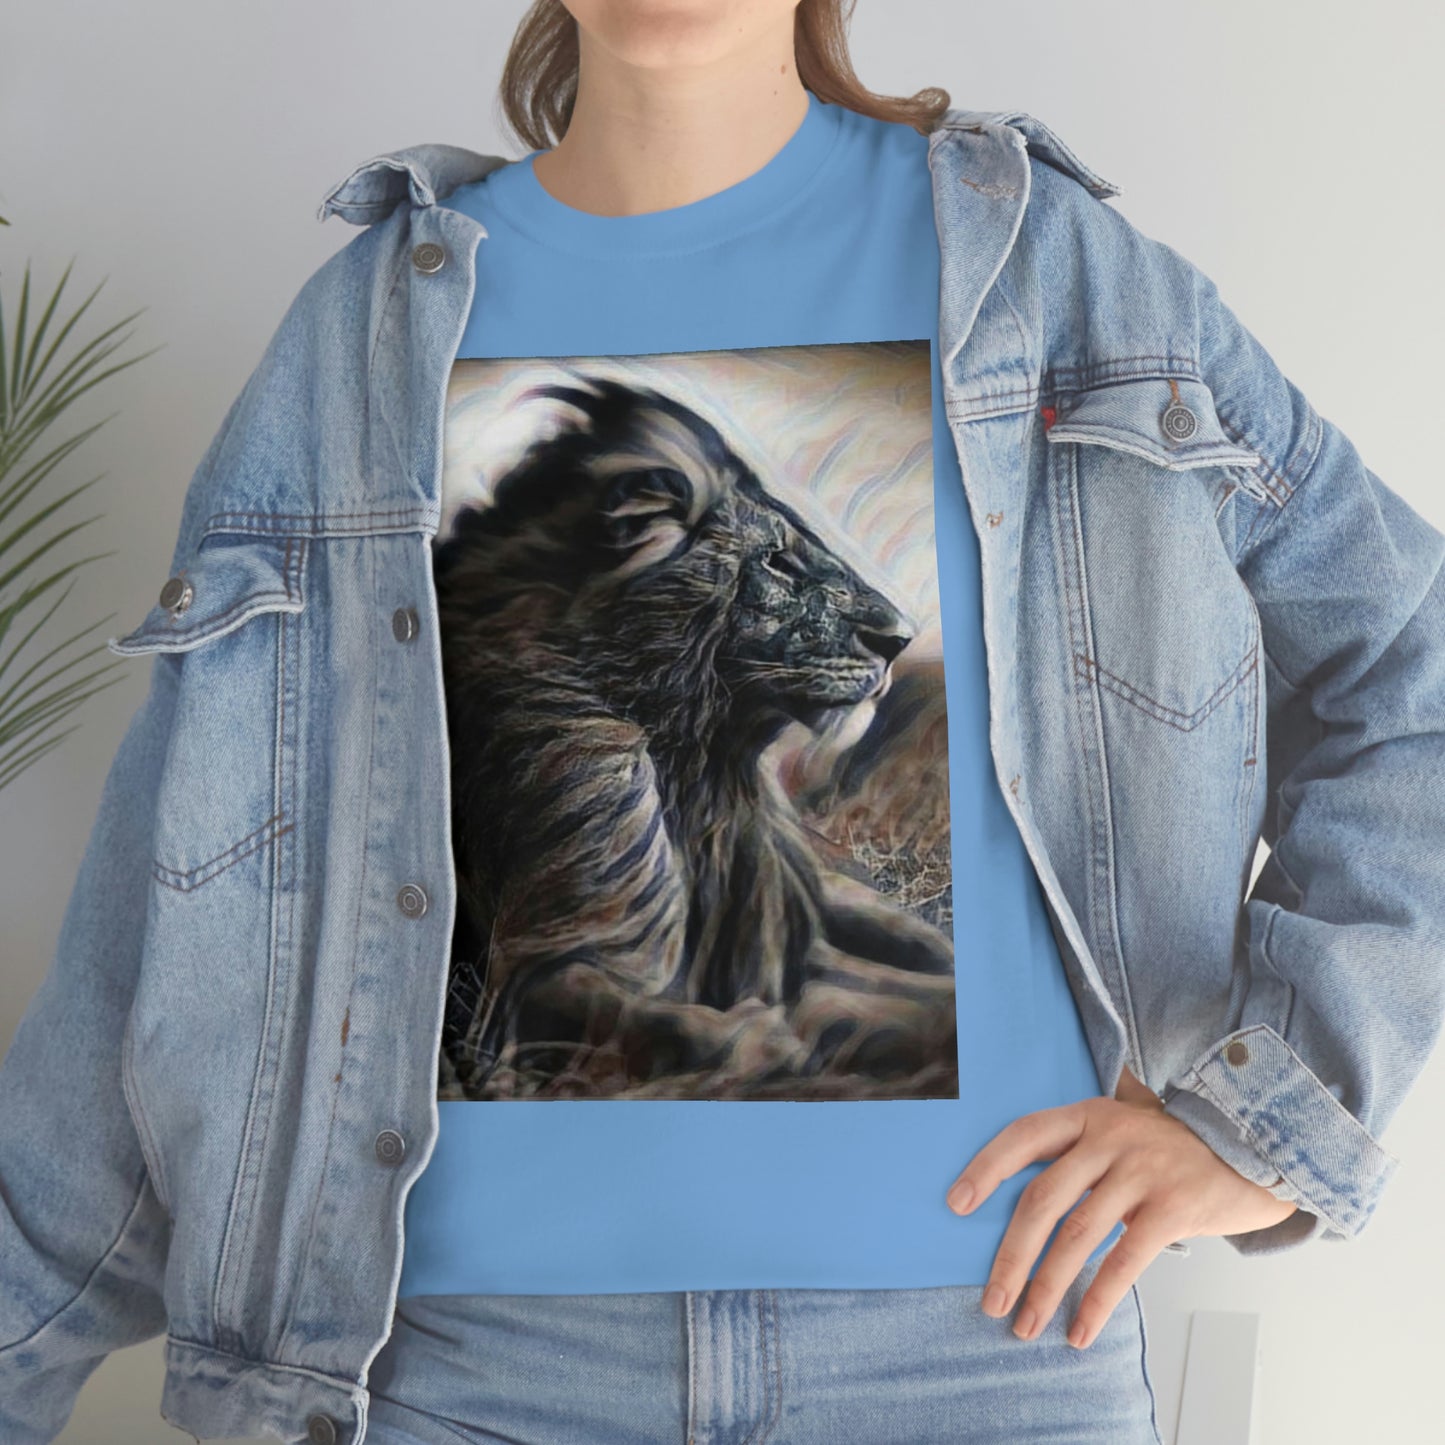 T-shirt - Lion Portrait, Lion - Just Try Me, Lion Face T-shirt, Lion Face T-shirt, Wild African Life, Animal Lover, Animal Face Shirt, Zoo Shirt, Animal Shirt, Lion Shirt